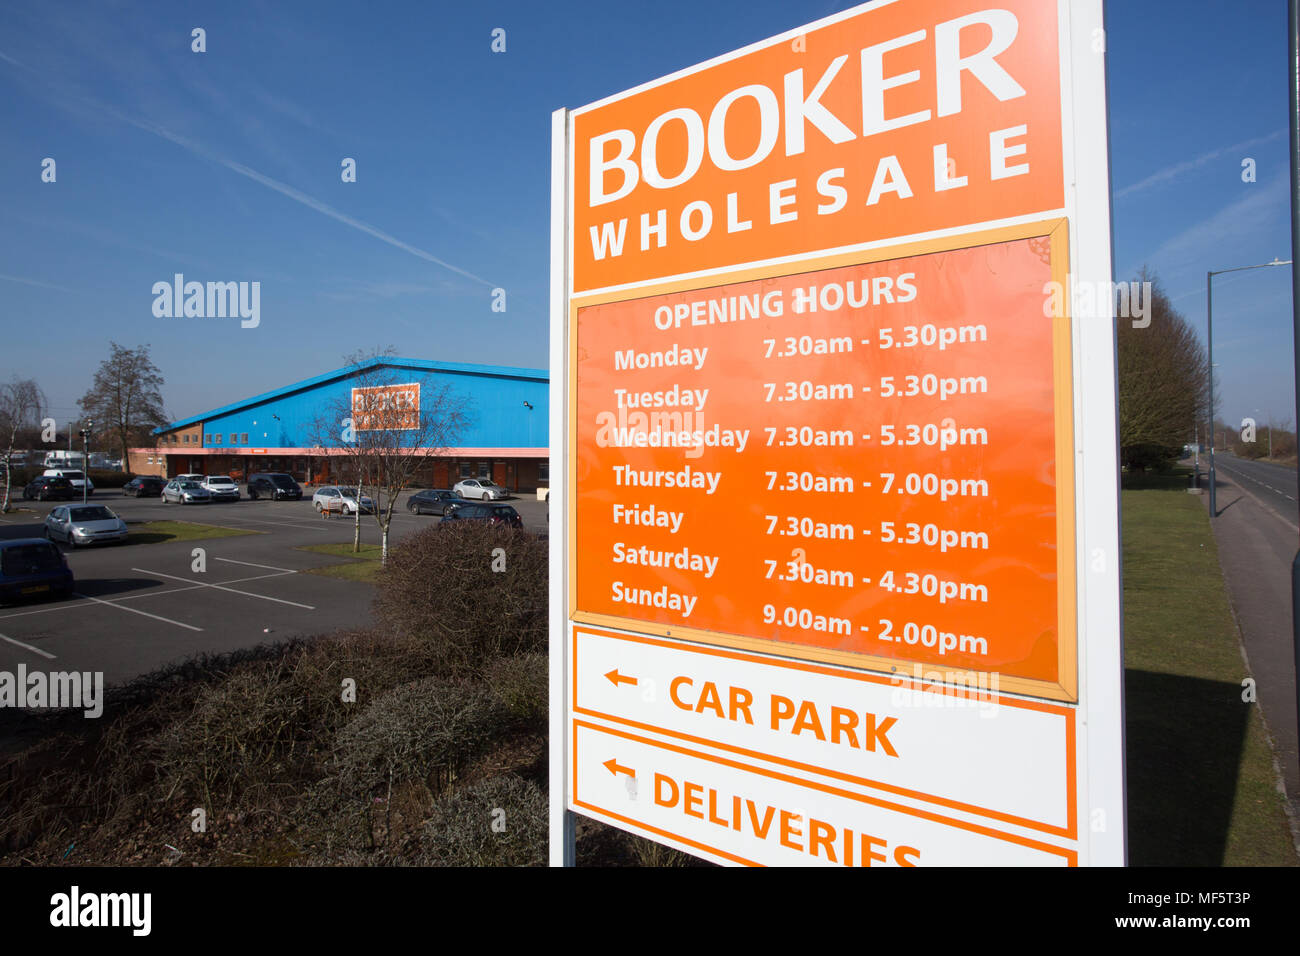 Booker Wholesale signage Stock Photo